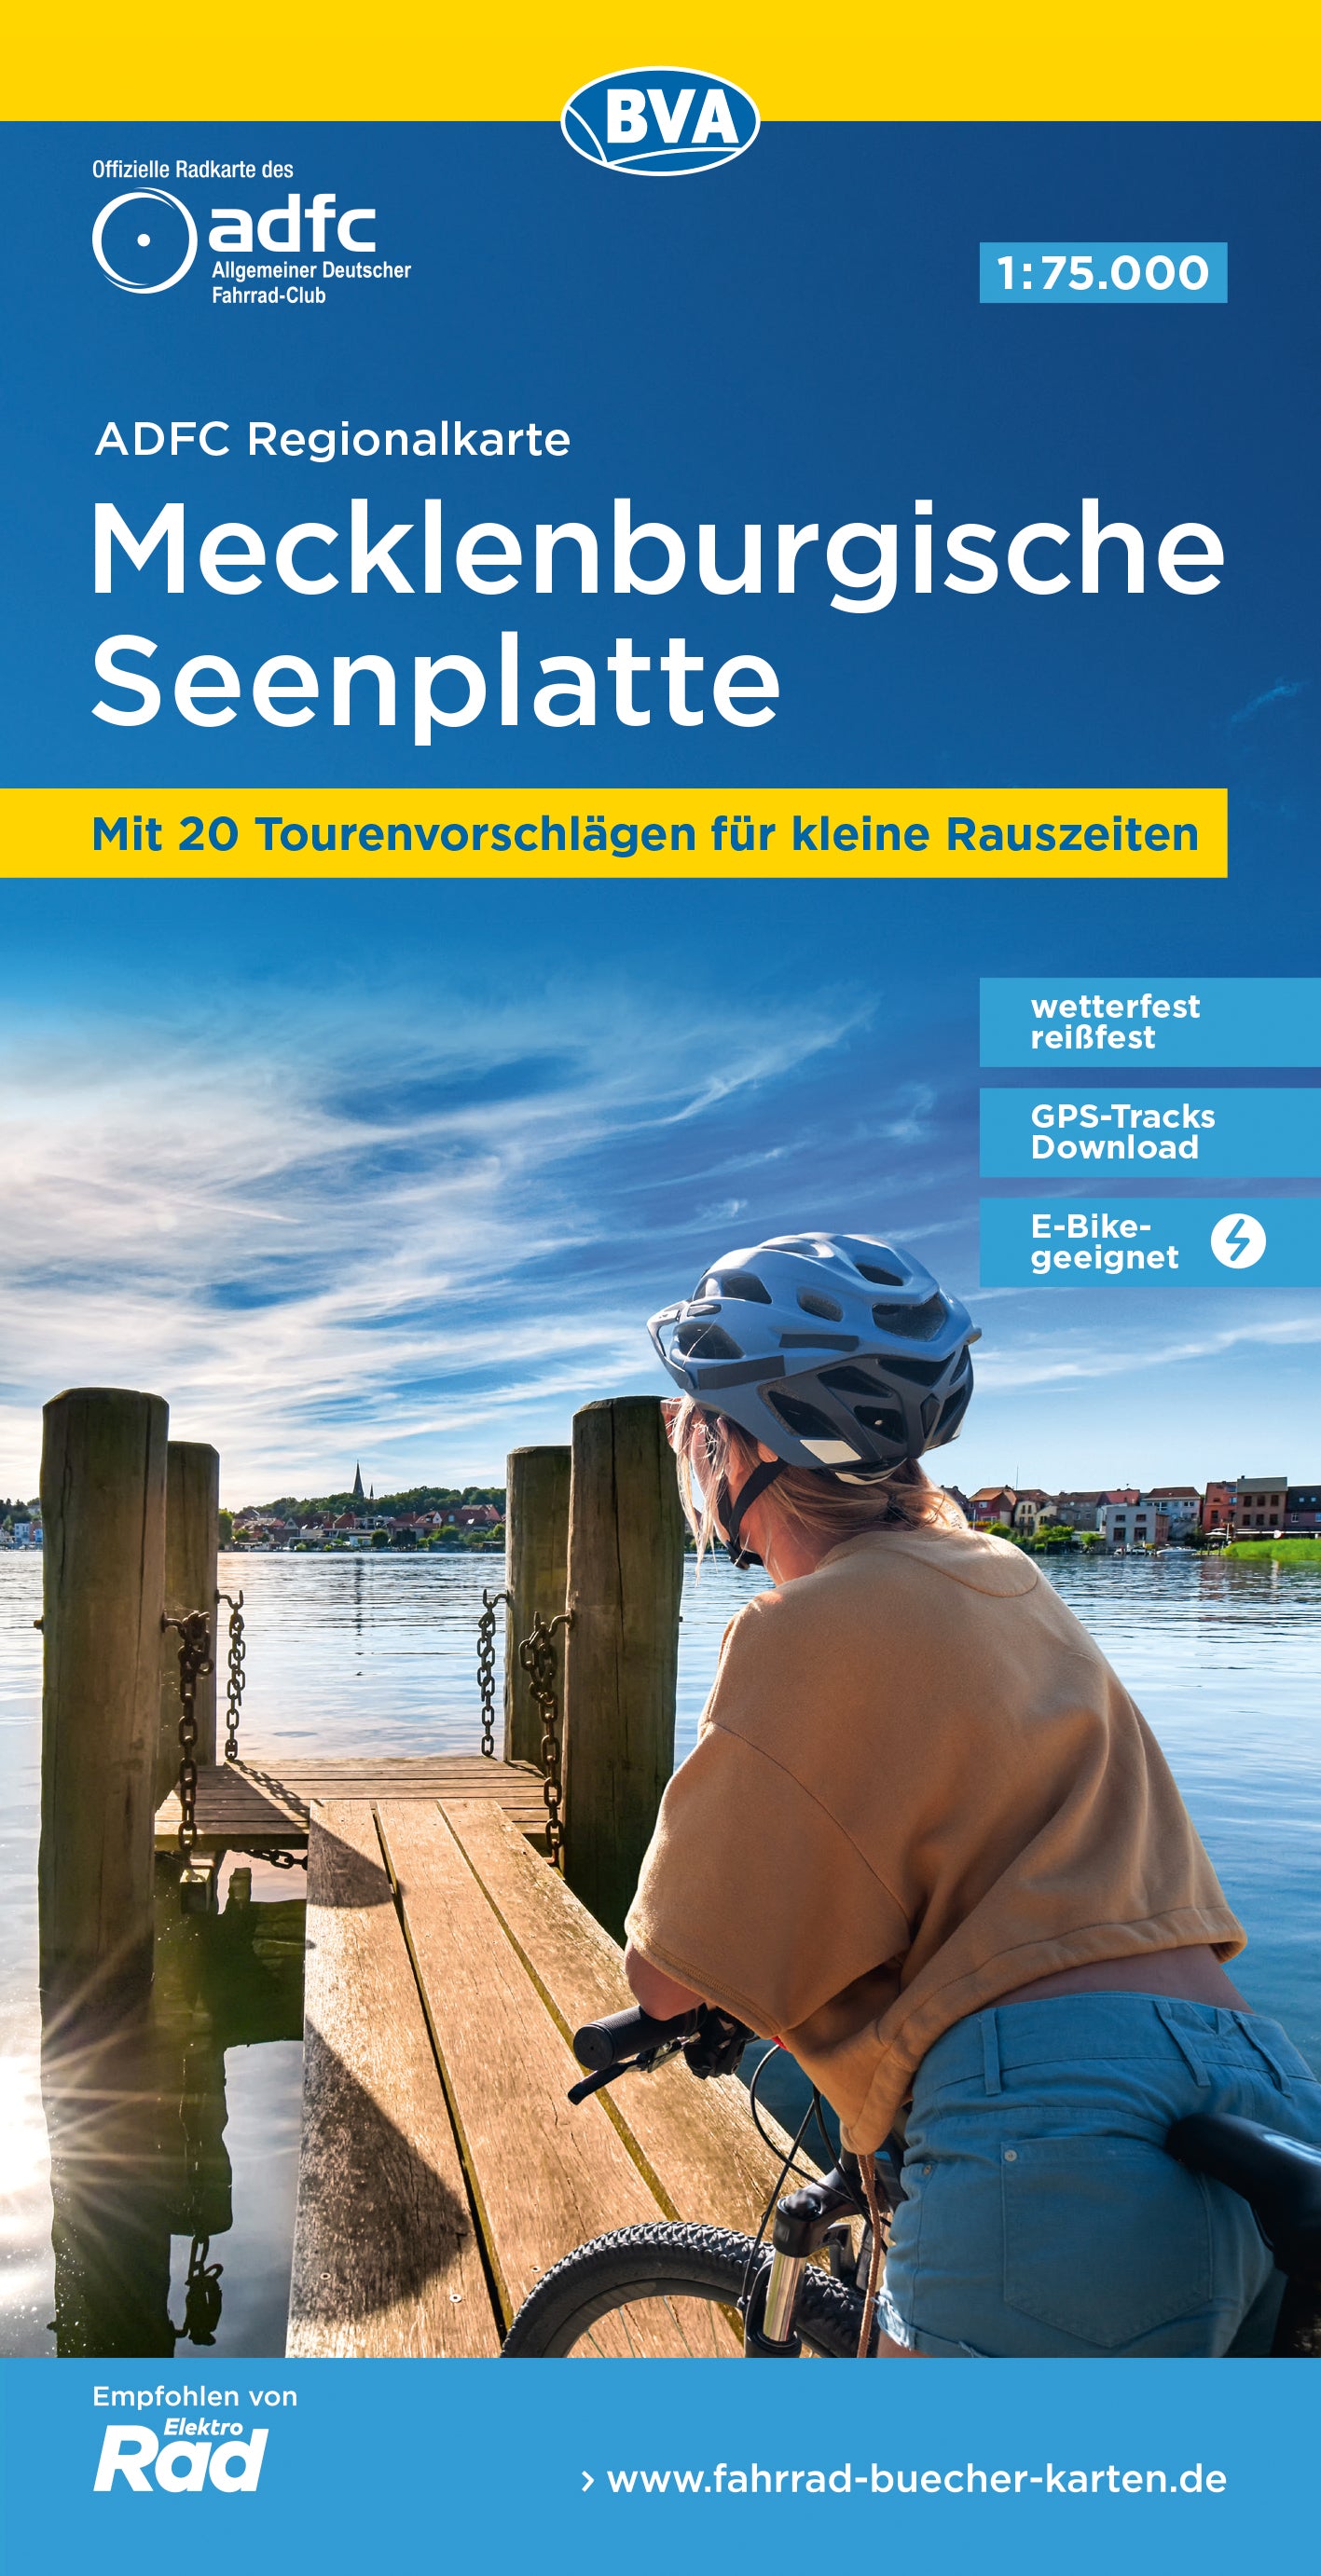 Mecklenburgische Seenplatte - ADFC Regionalkarte